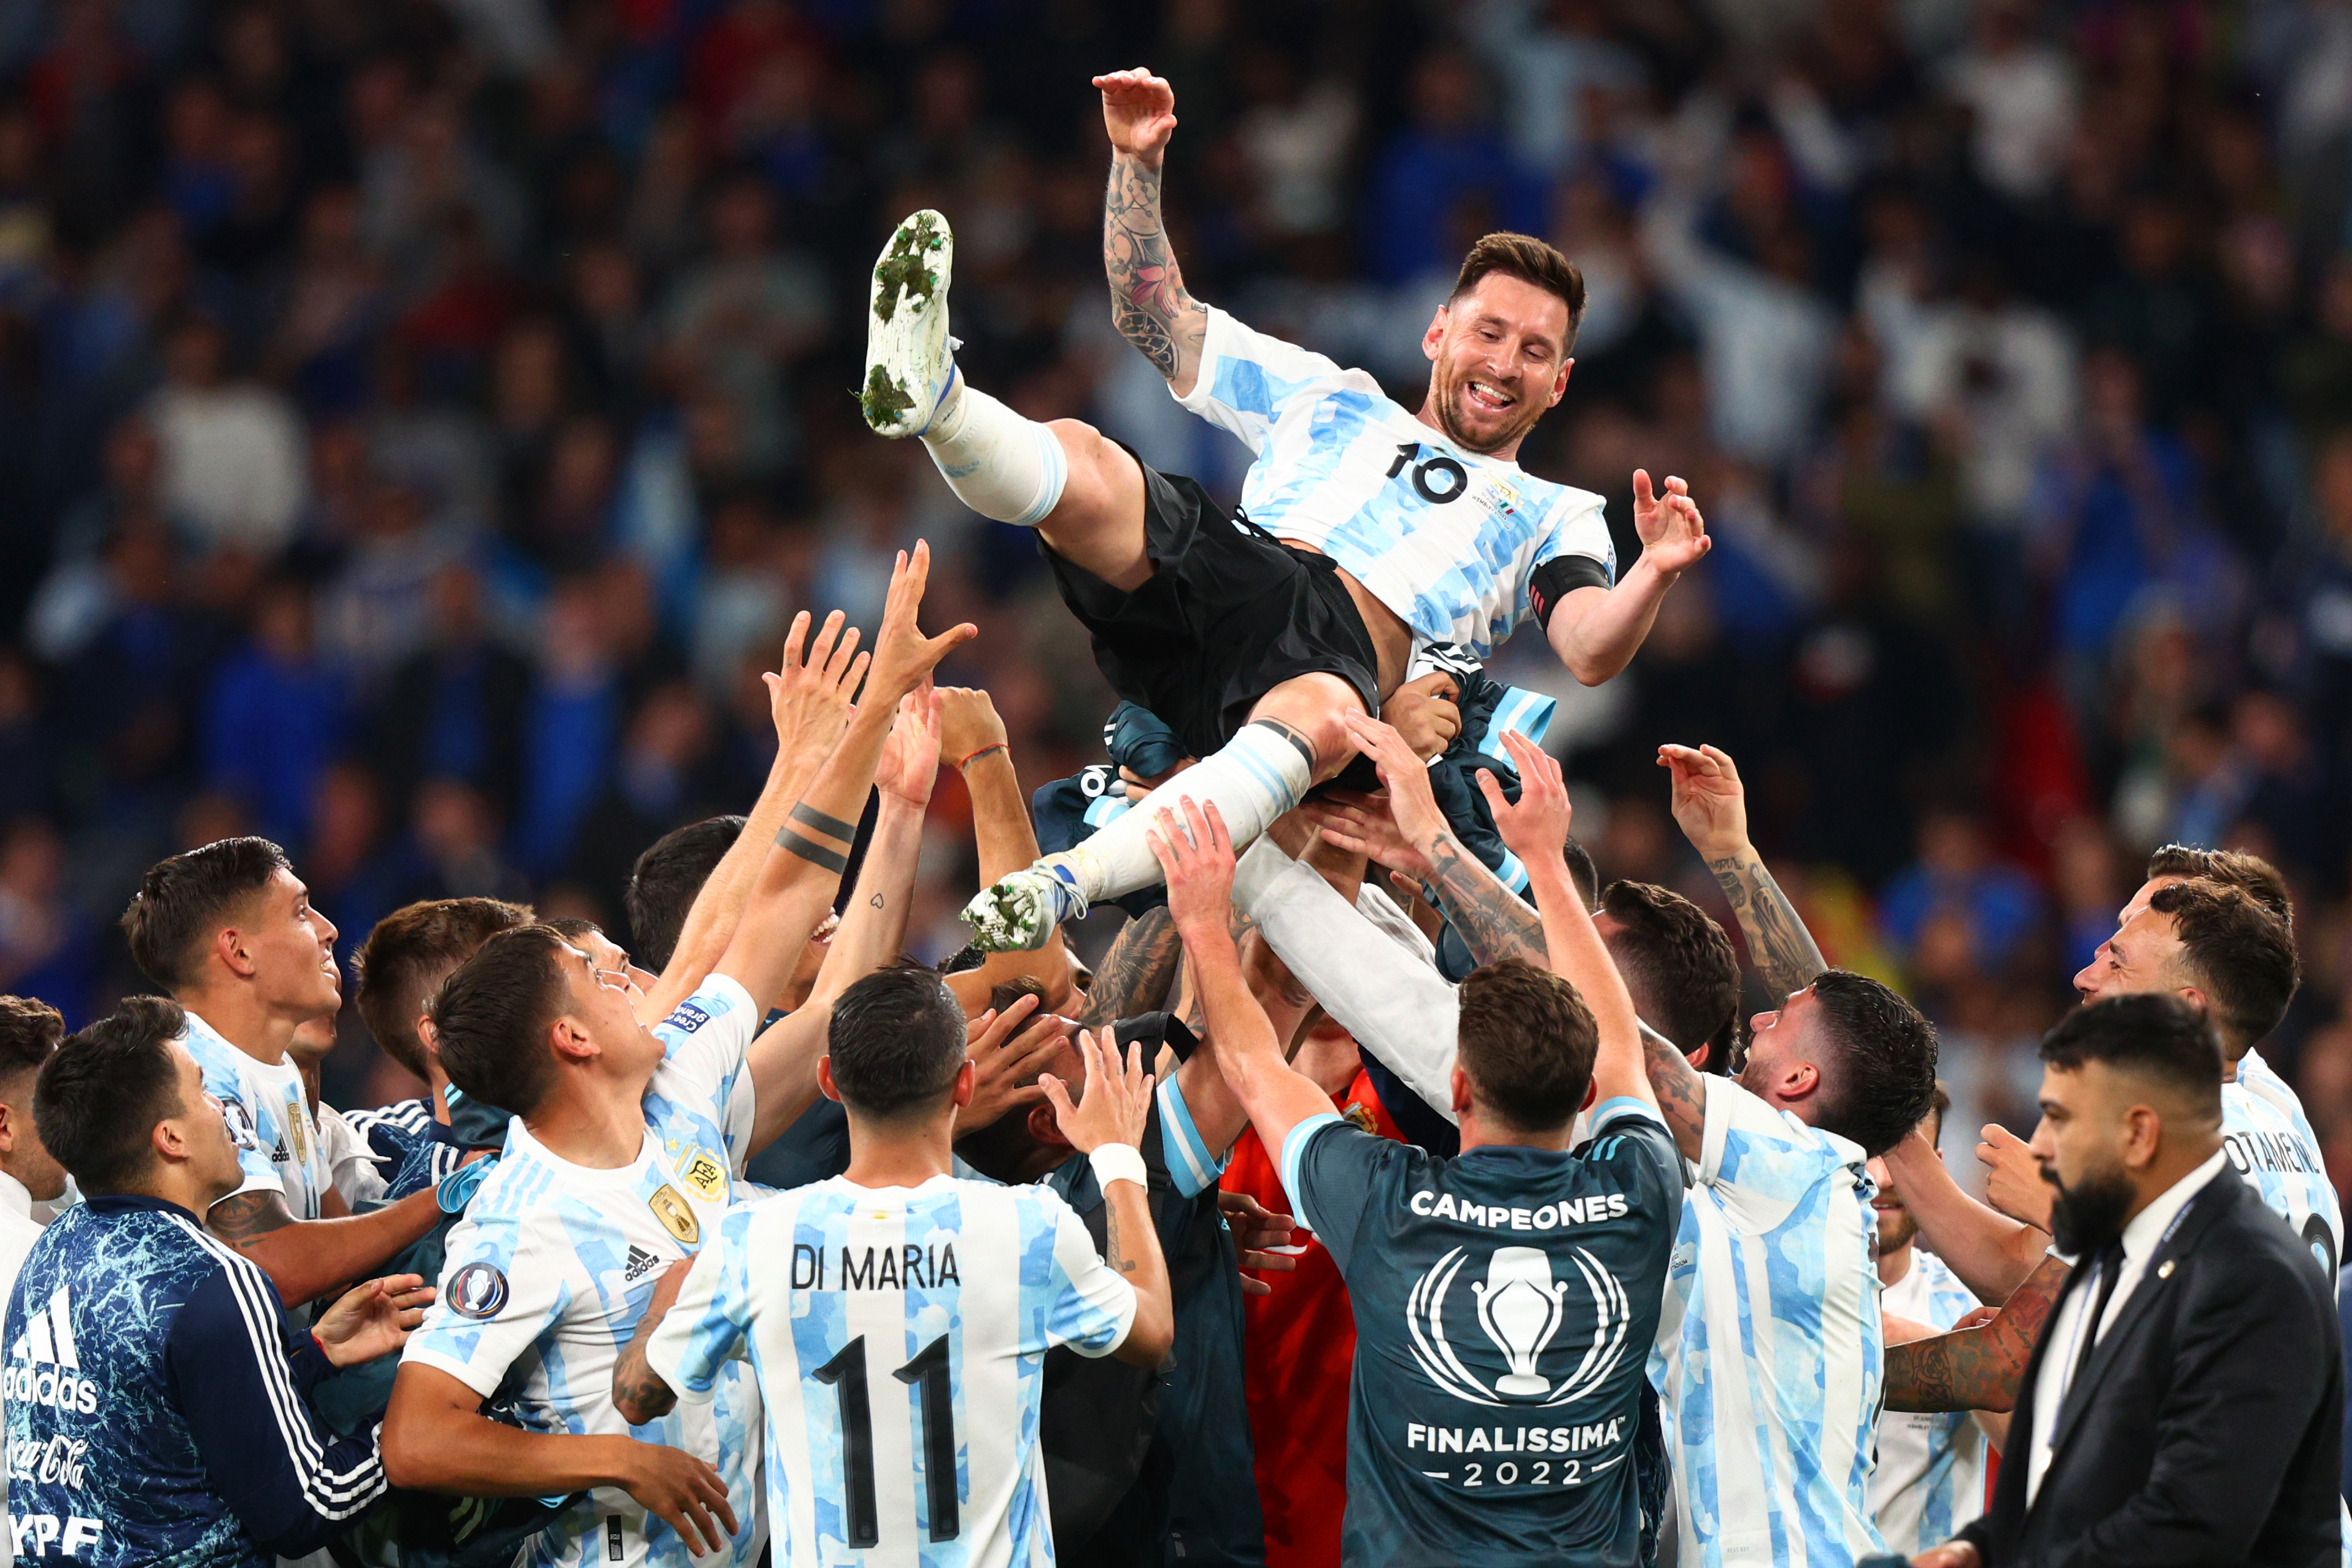 Hình ảnh cho thấy sự gắn bó giữa Messi và đội tuyển Argentina. Theo dõi những khoảnh khắc đầy cảm xúc được ghi lại trên sân cỏ, khi người hâm mộ có thêm niềm tin vào đội bóng của mình.